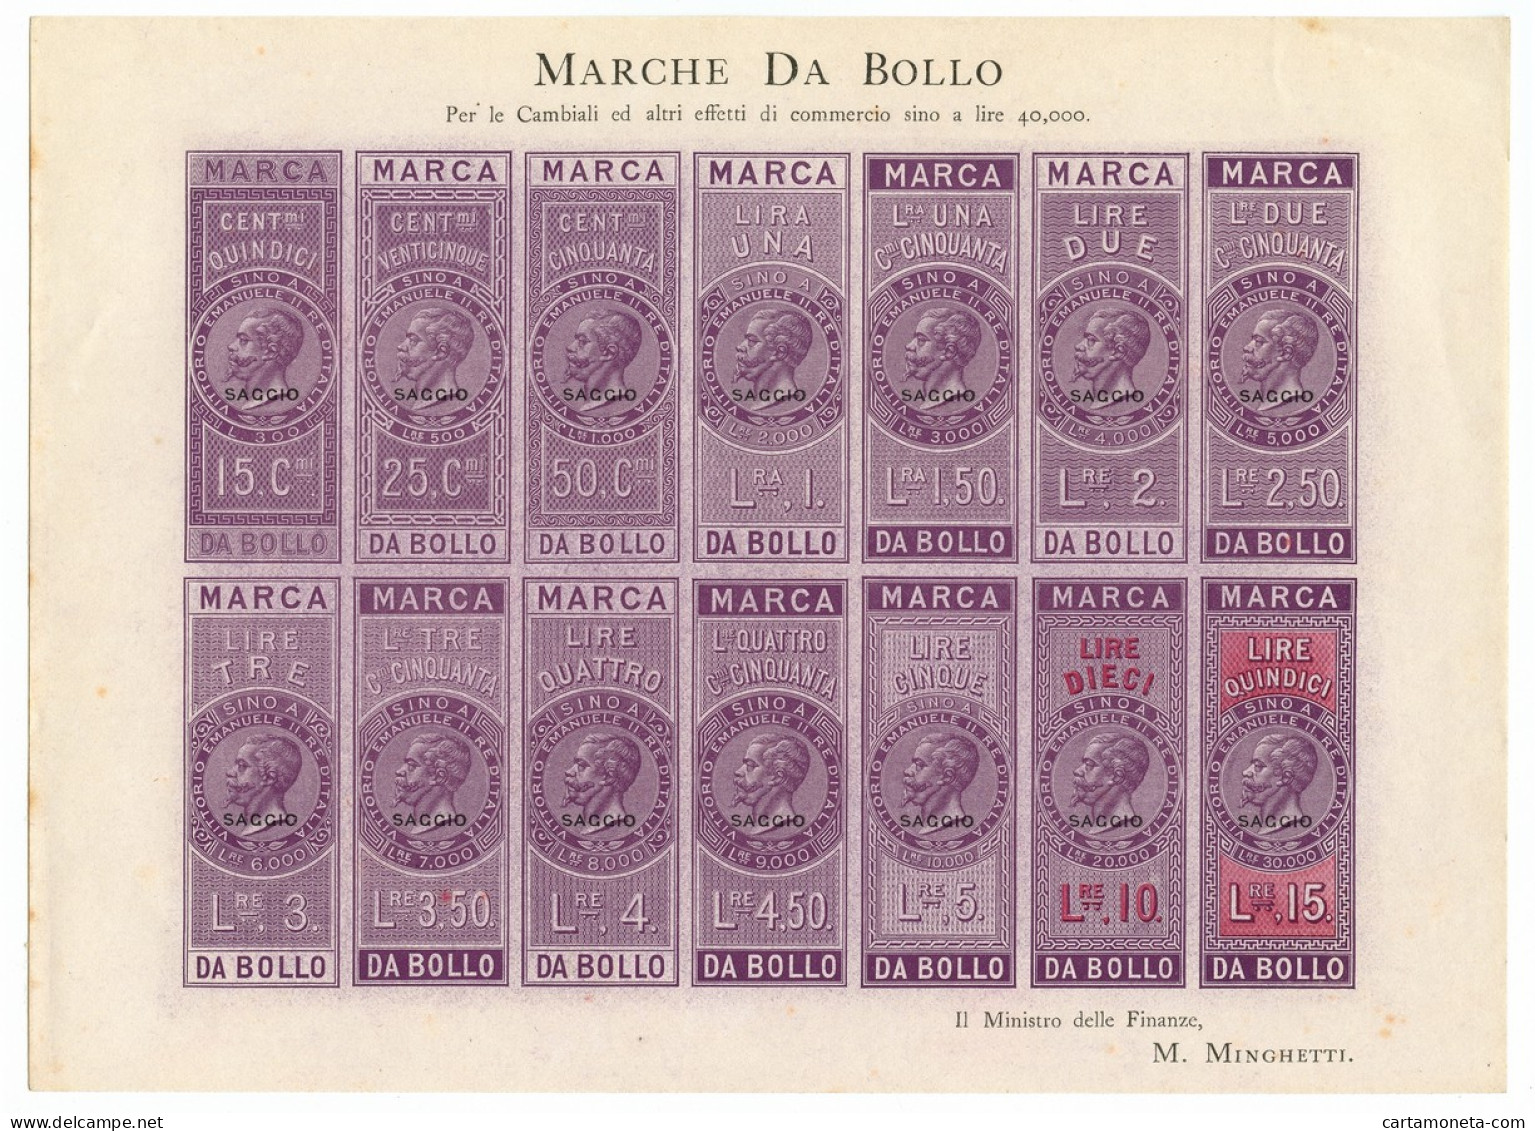 FOGLIO INTERO 14 MARCHE DA BOLLO "SAGGIO" VITTORIO EMANUELE II 1863 SUP - [ 7] Errors & Varieties